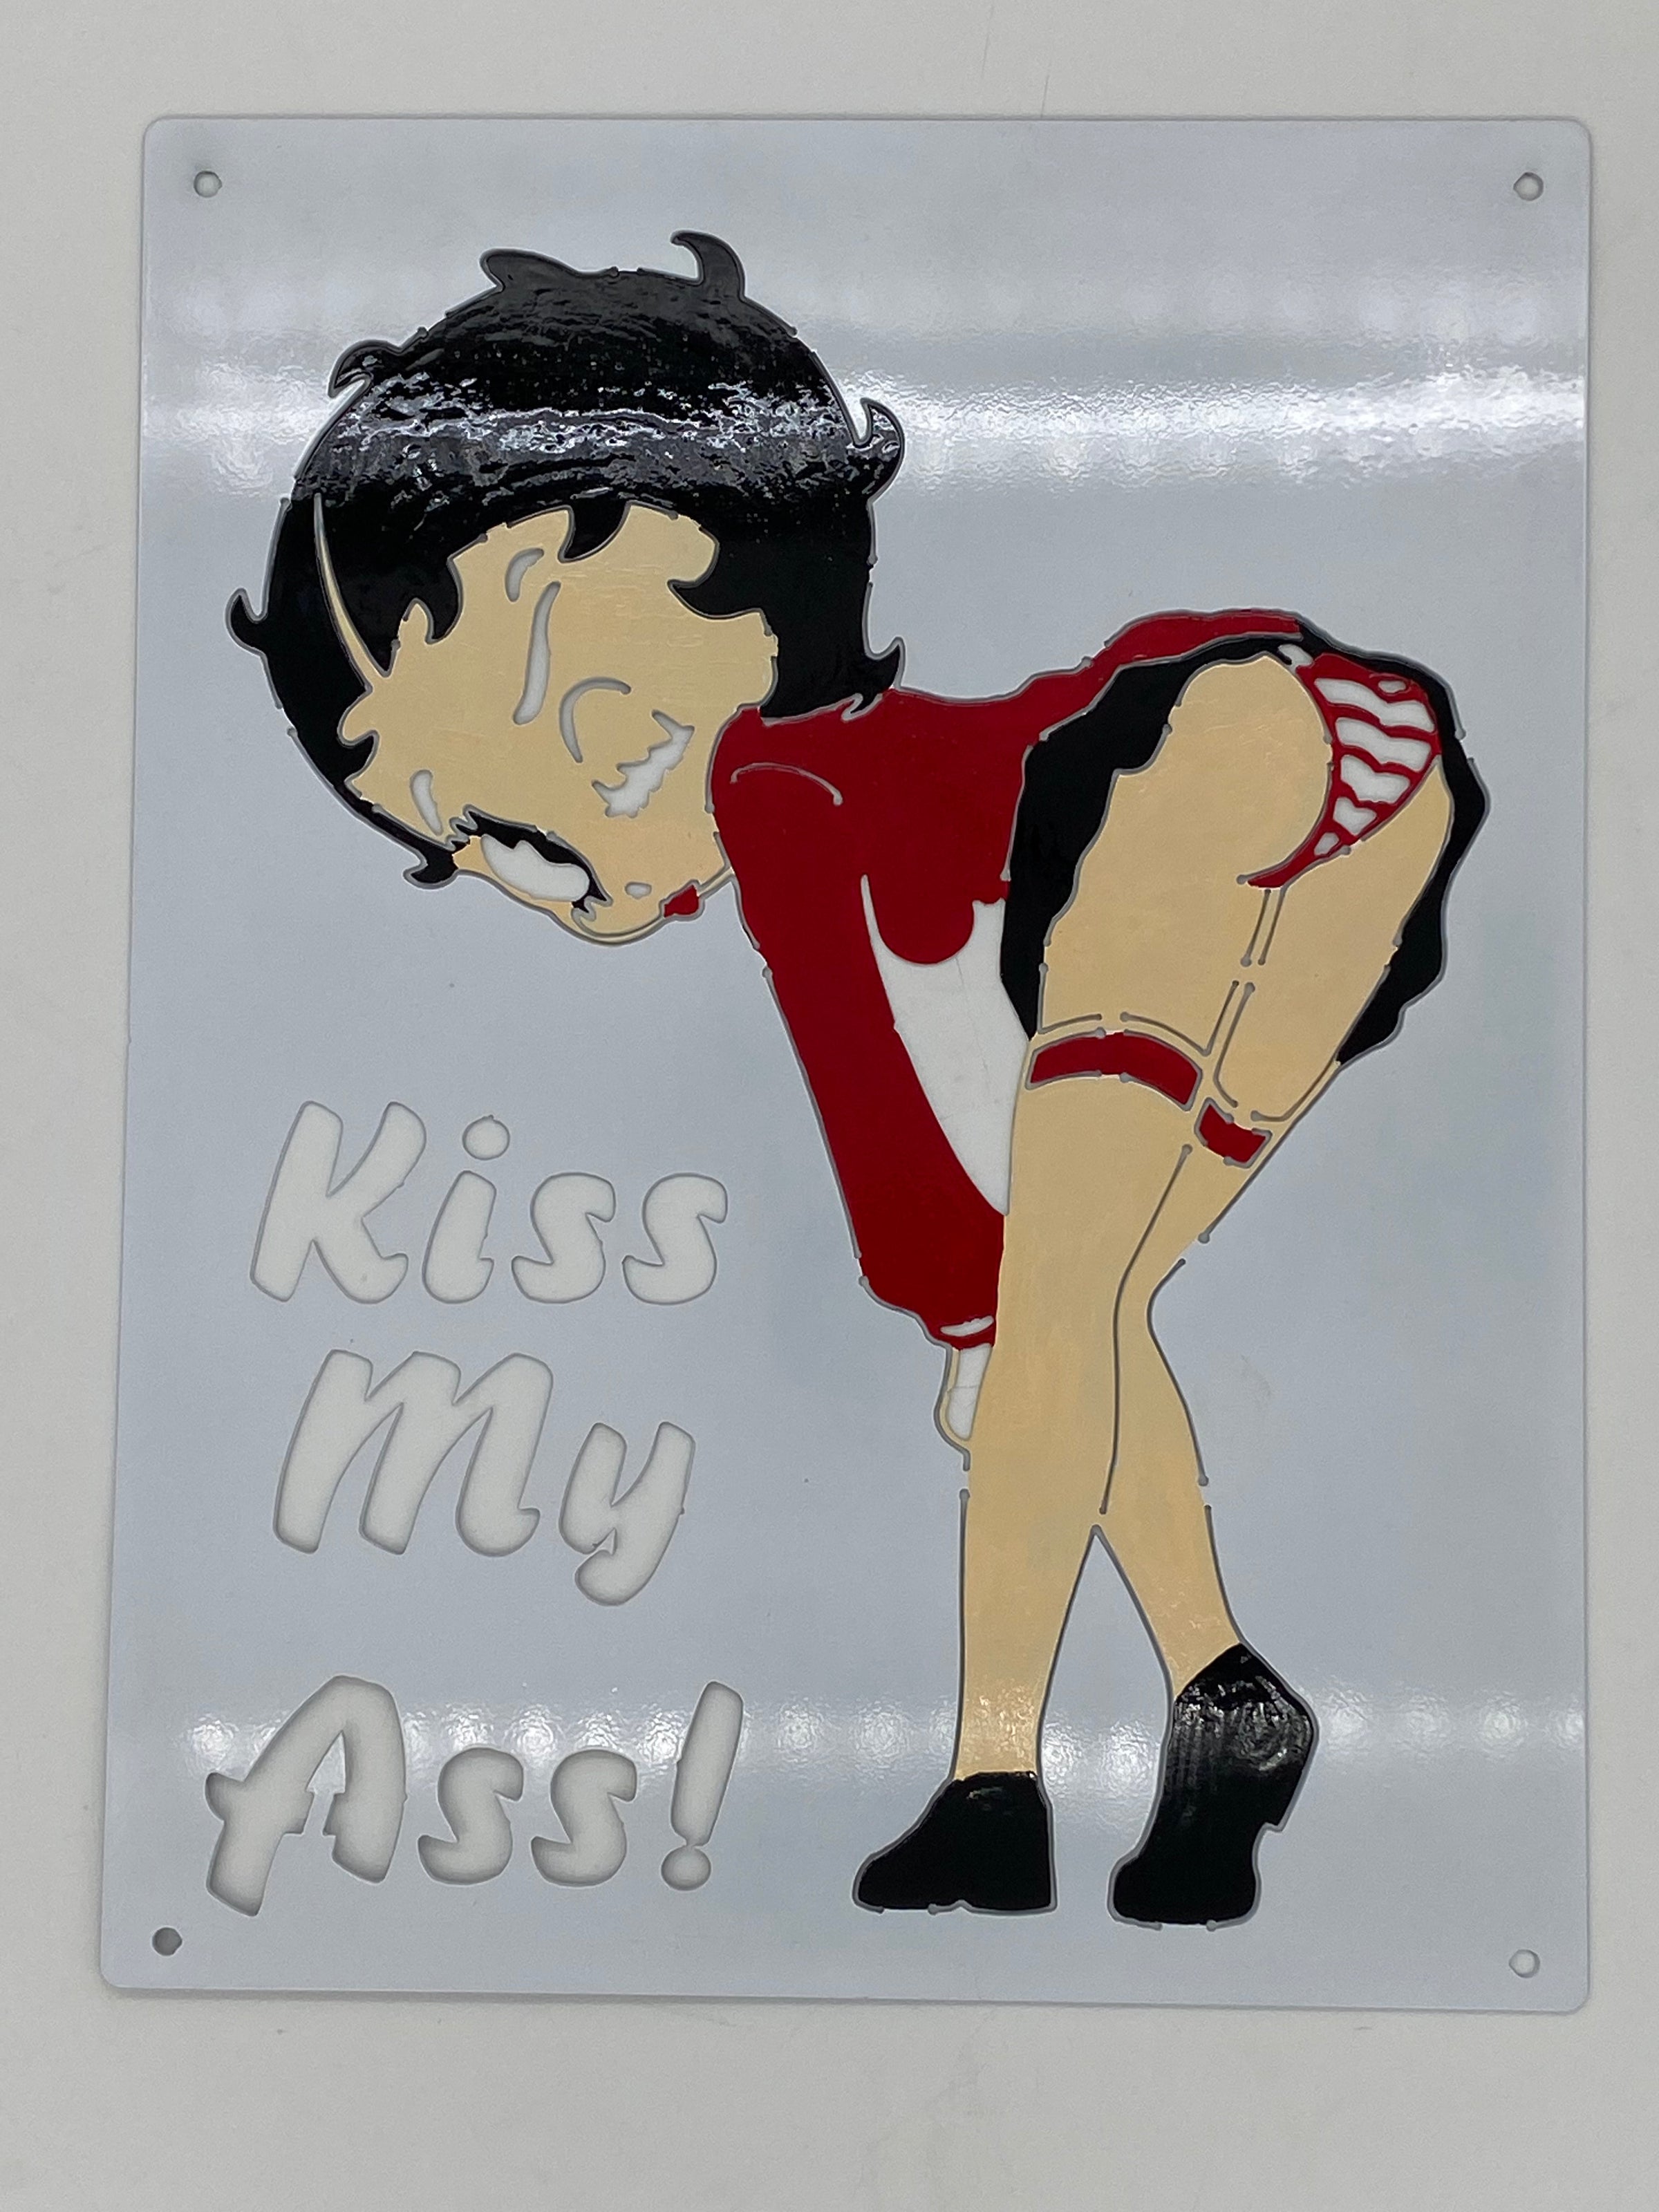 kiss my butt cartoon